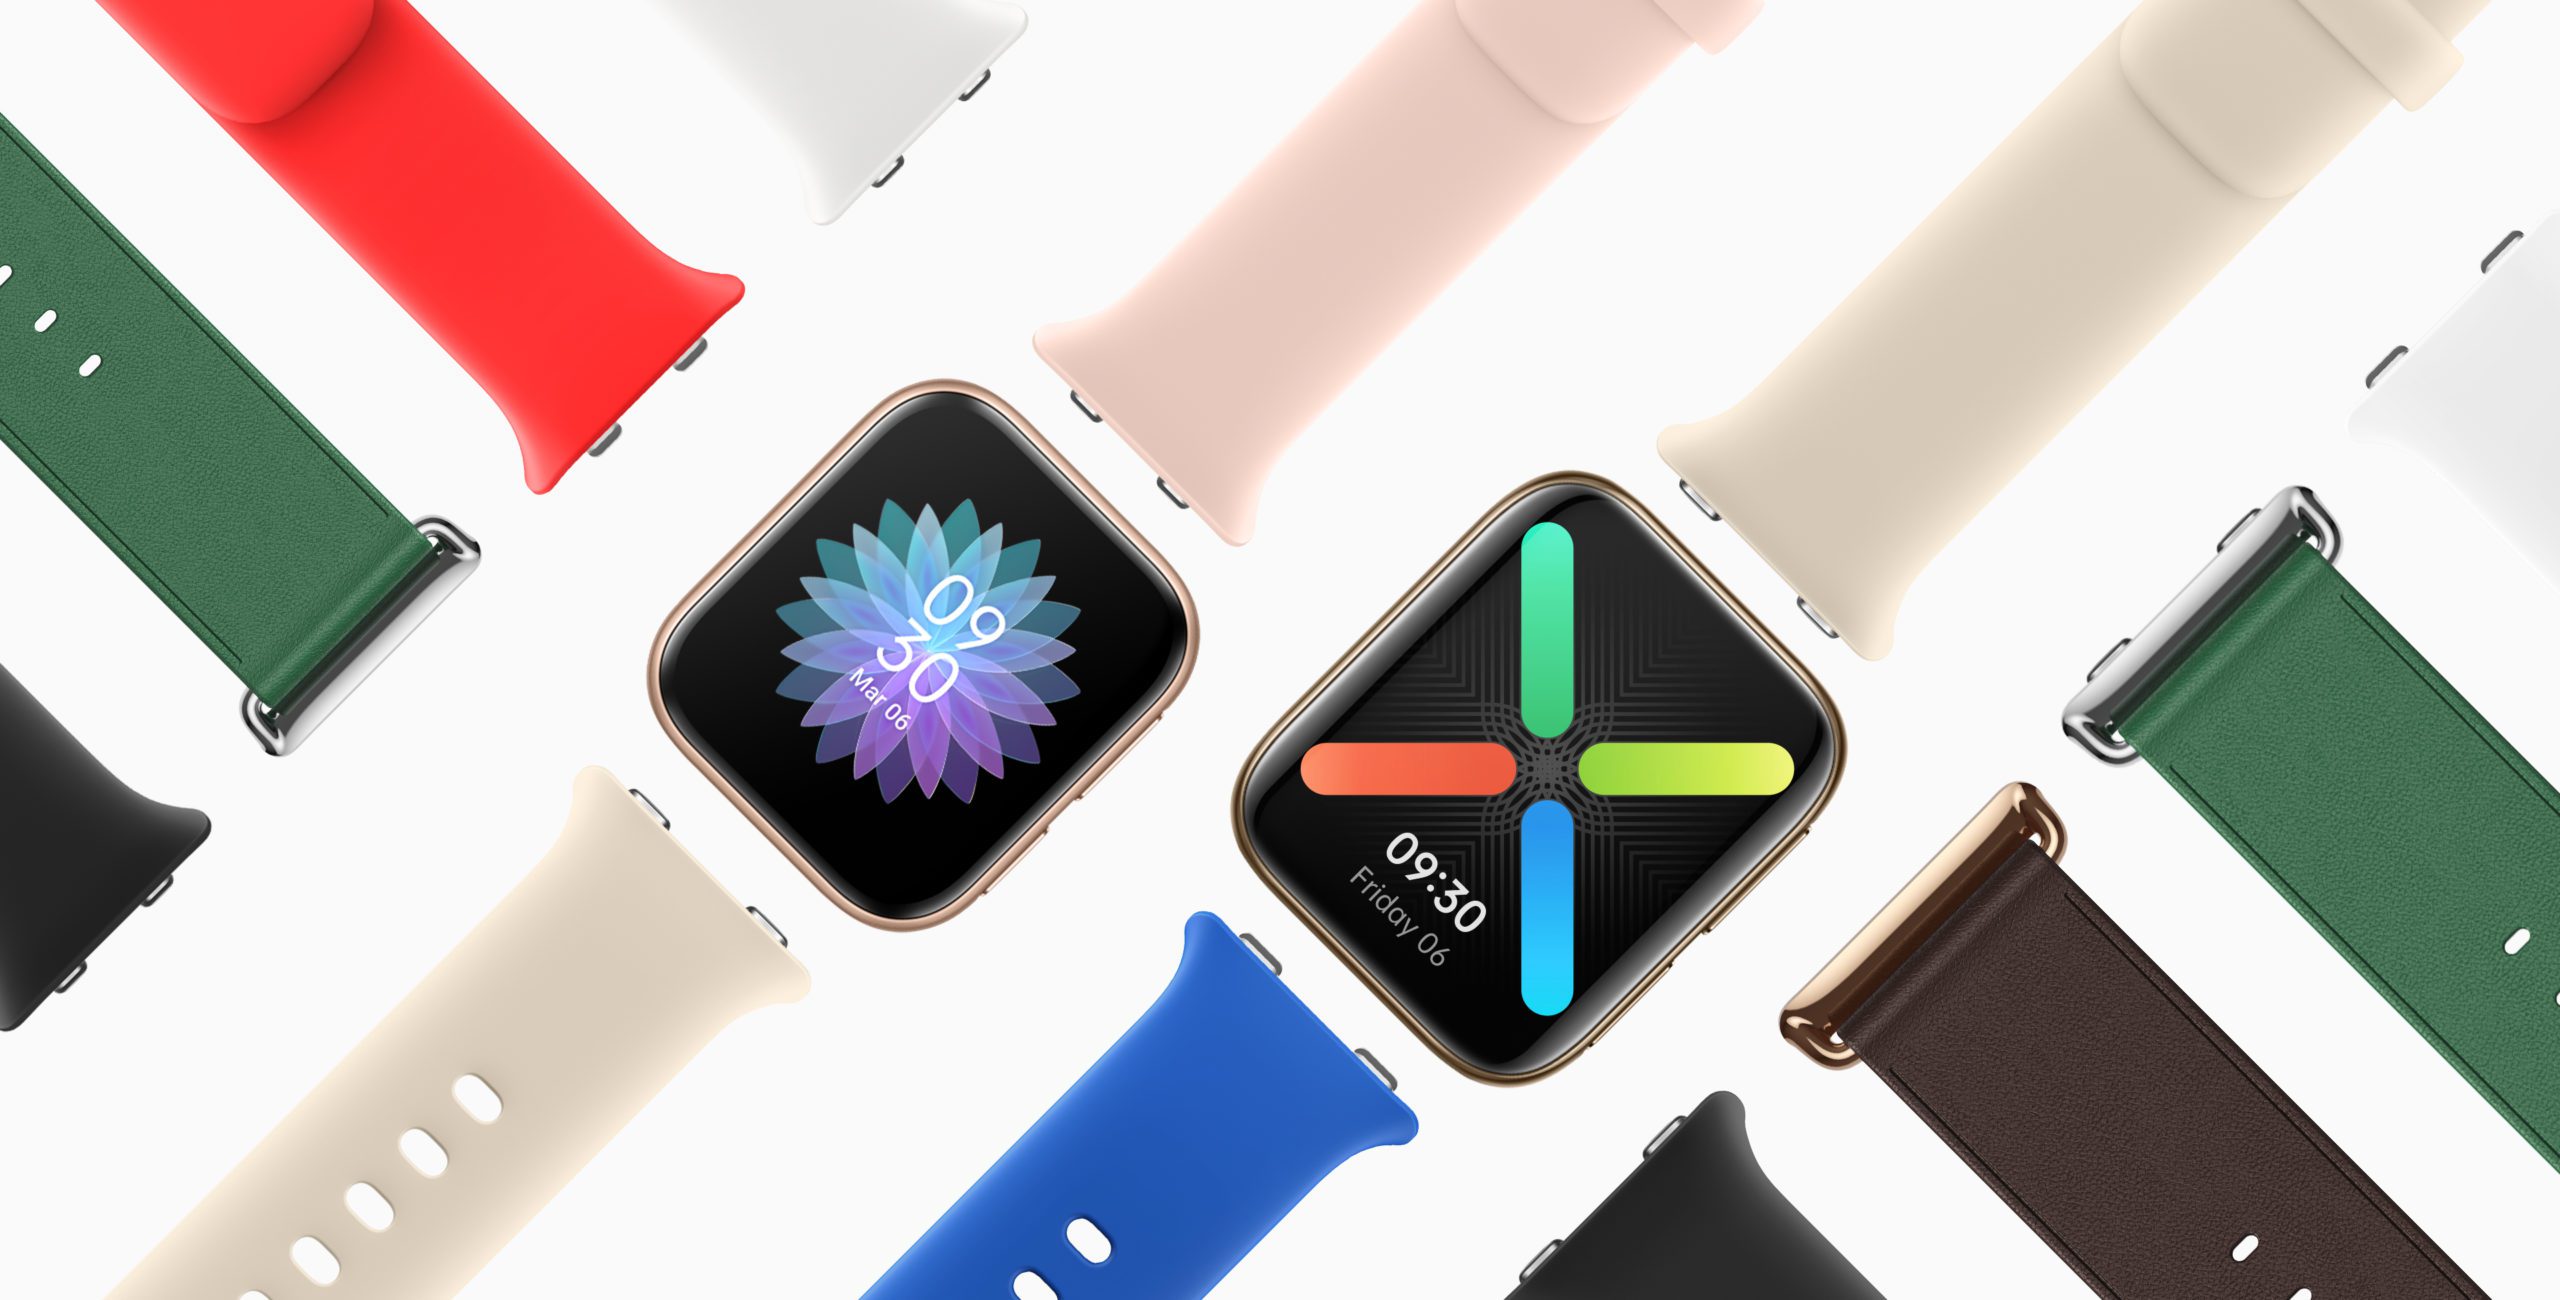 Wir könnten endlich das Wear OS bekommen Apple Watch Klon, den wir wirklich verdienen 205